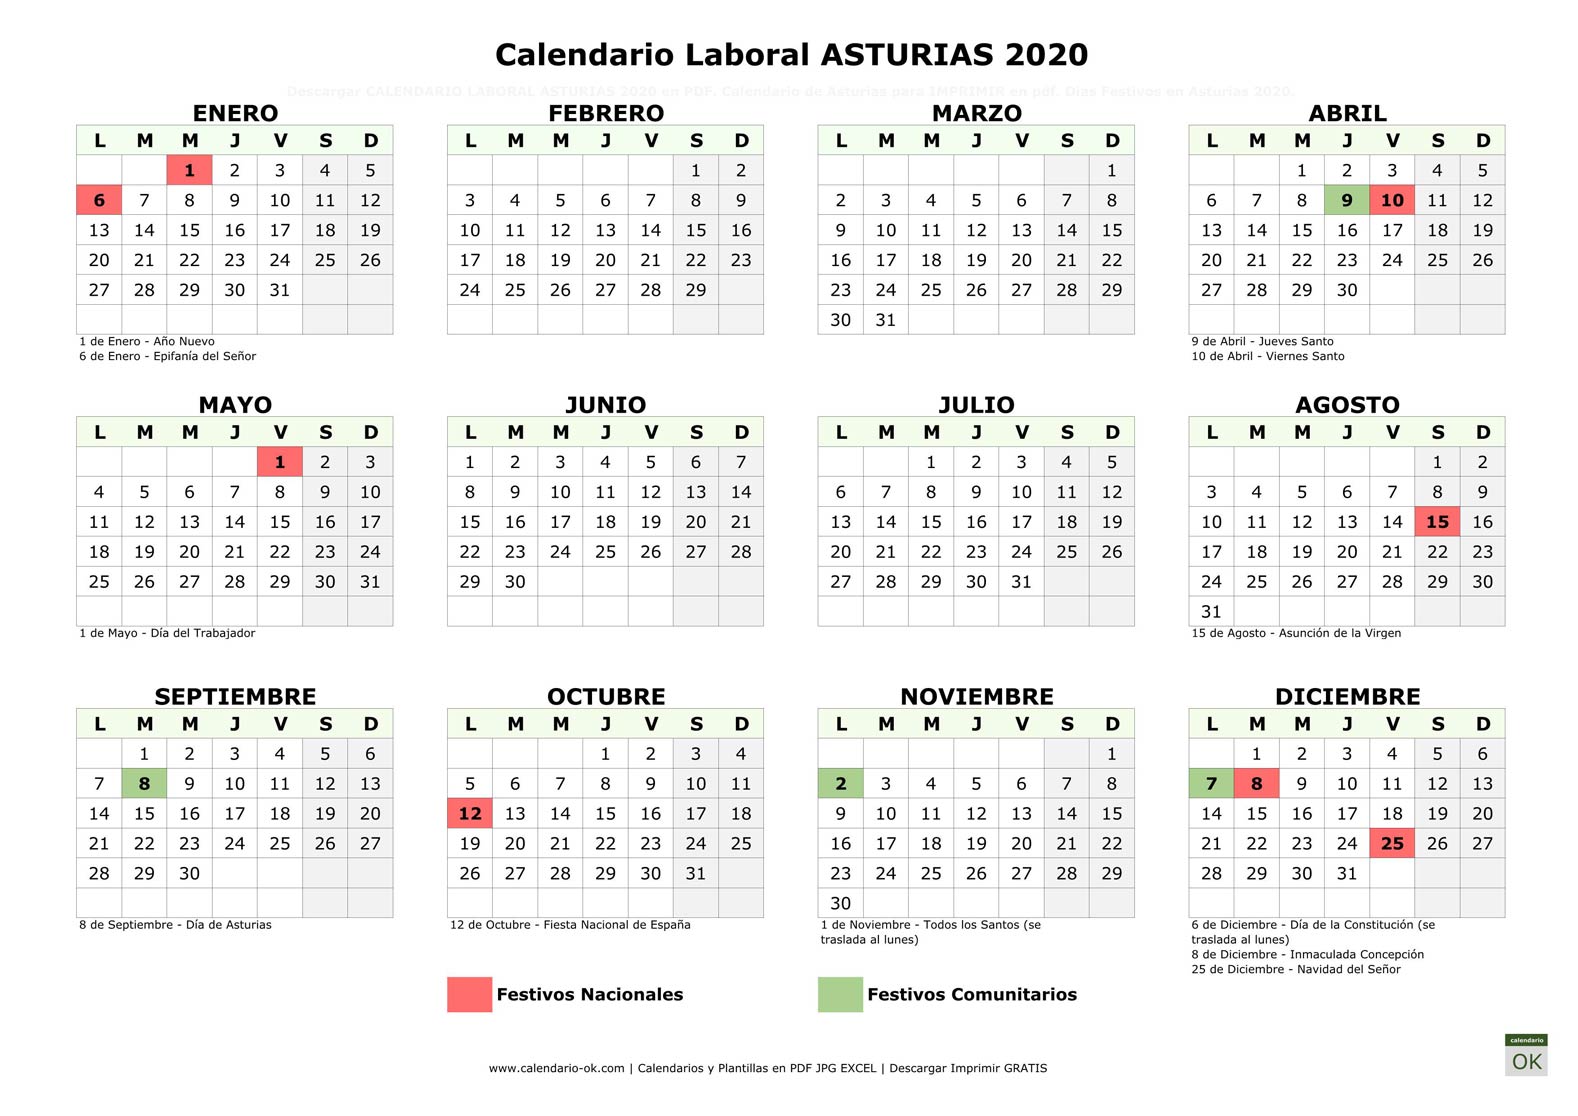 Calendario Laboral Principado de Asturias 2020 horizontal